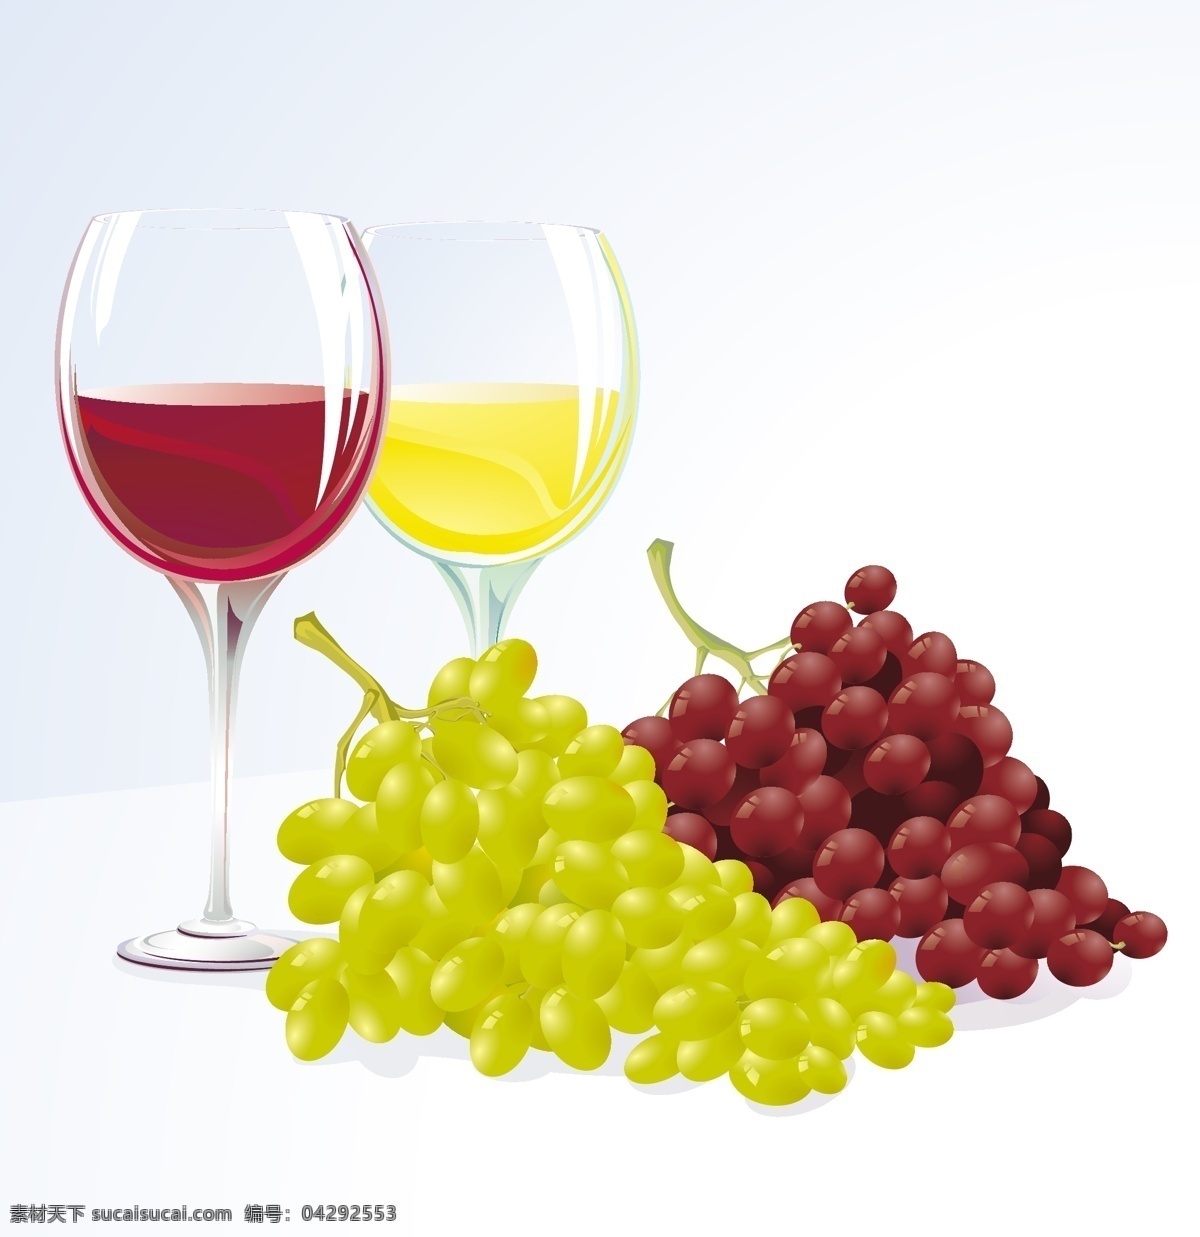 葡萄 葡萄酒 载体 材料 玻璃 眼镜 果 水果酒 向量 材料的葡萄 矢量图 其他矢量图